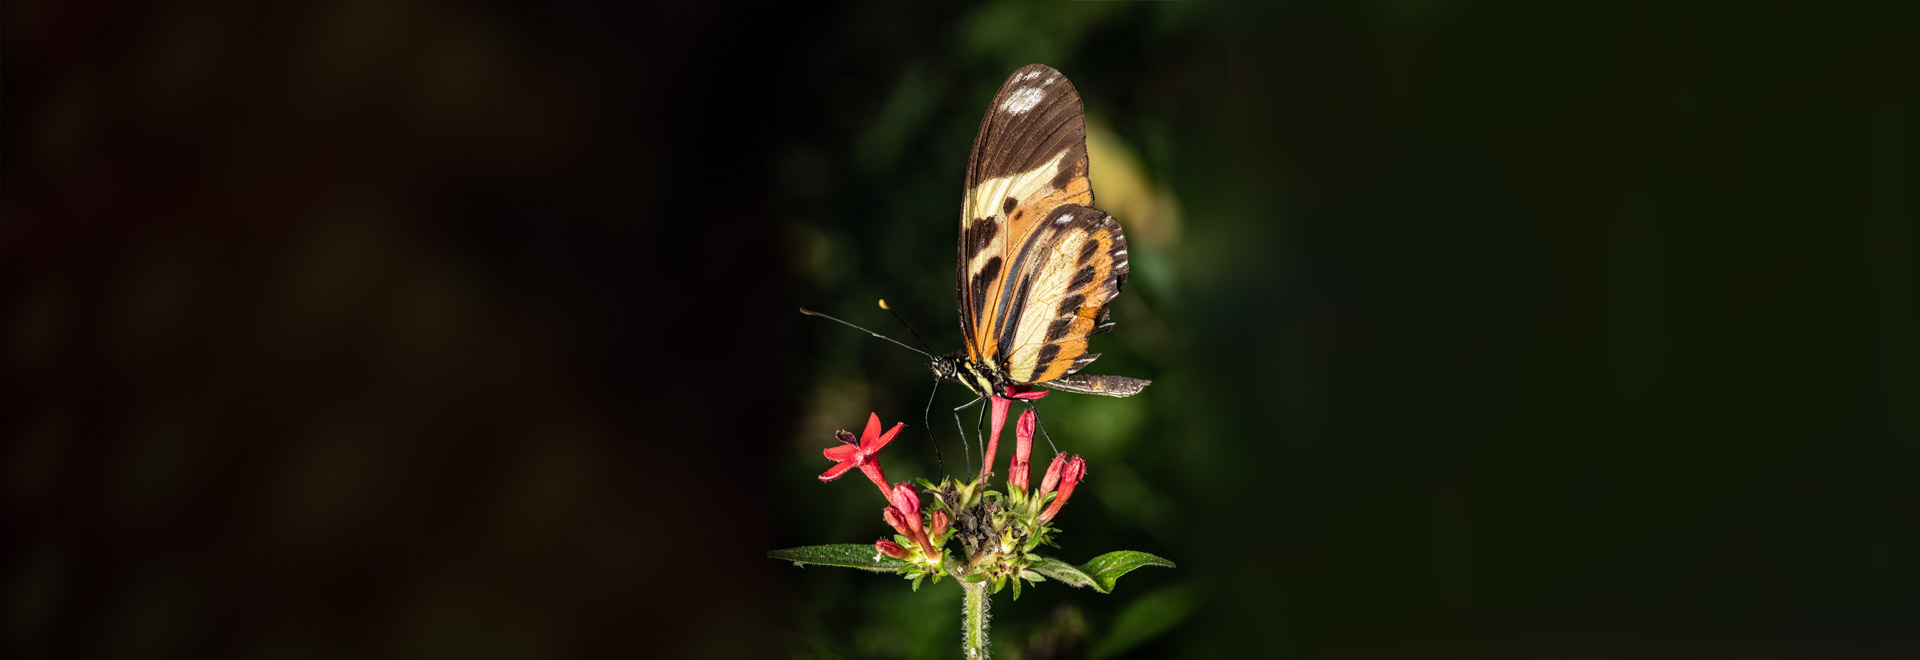 Conhecer os diferentes tipos de borboletas, seu comportamento e sua história evolutiva é essencial para entender a biodiversidade do planeta